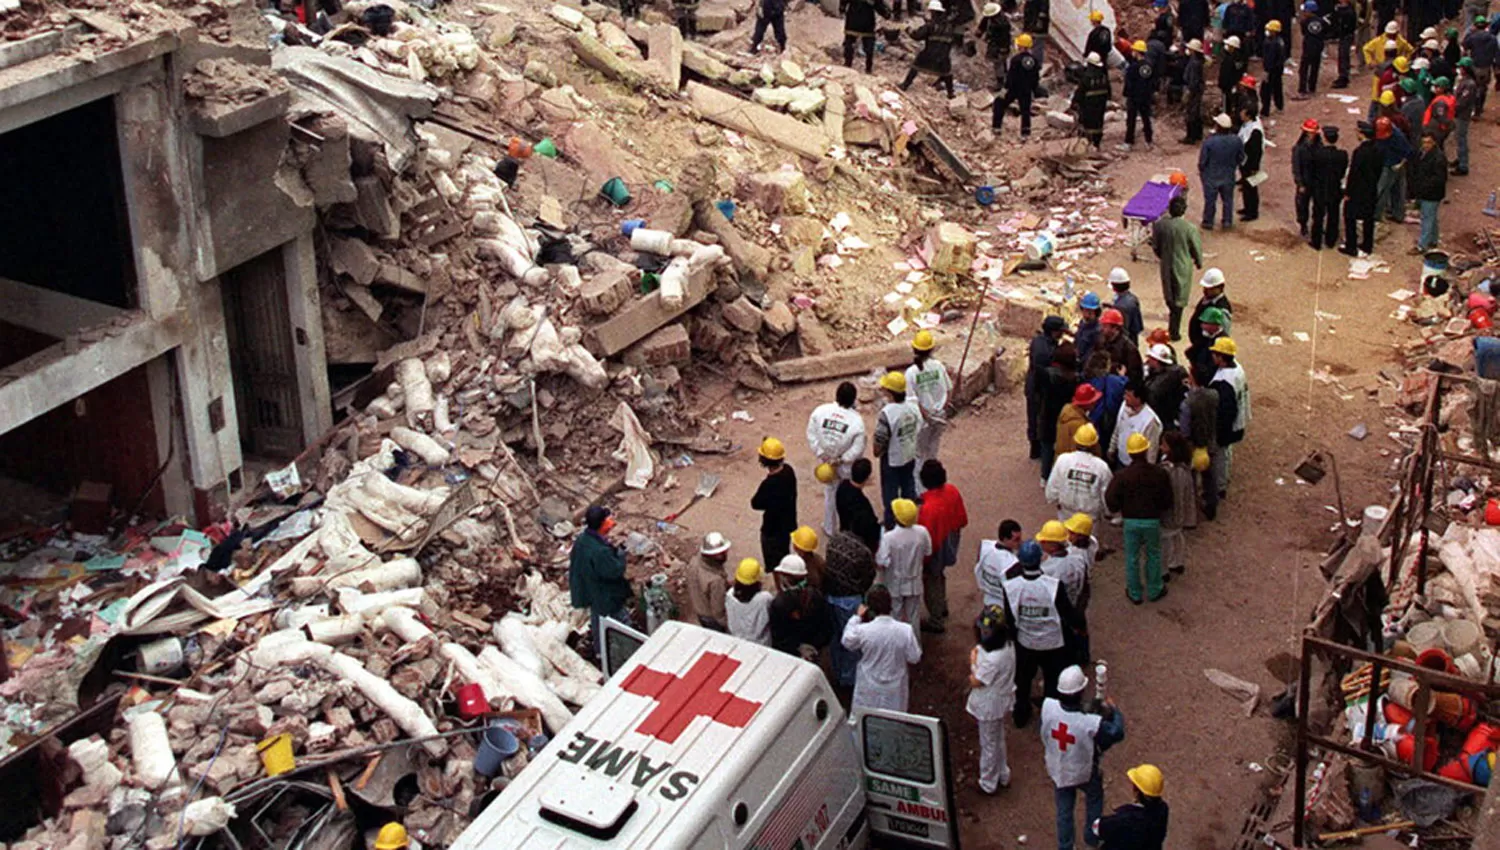 DESTRUCCIÓN. La imagen muestra cómo quedó la sede de la AMIA luego del atentado. ARCHIVO